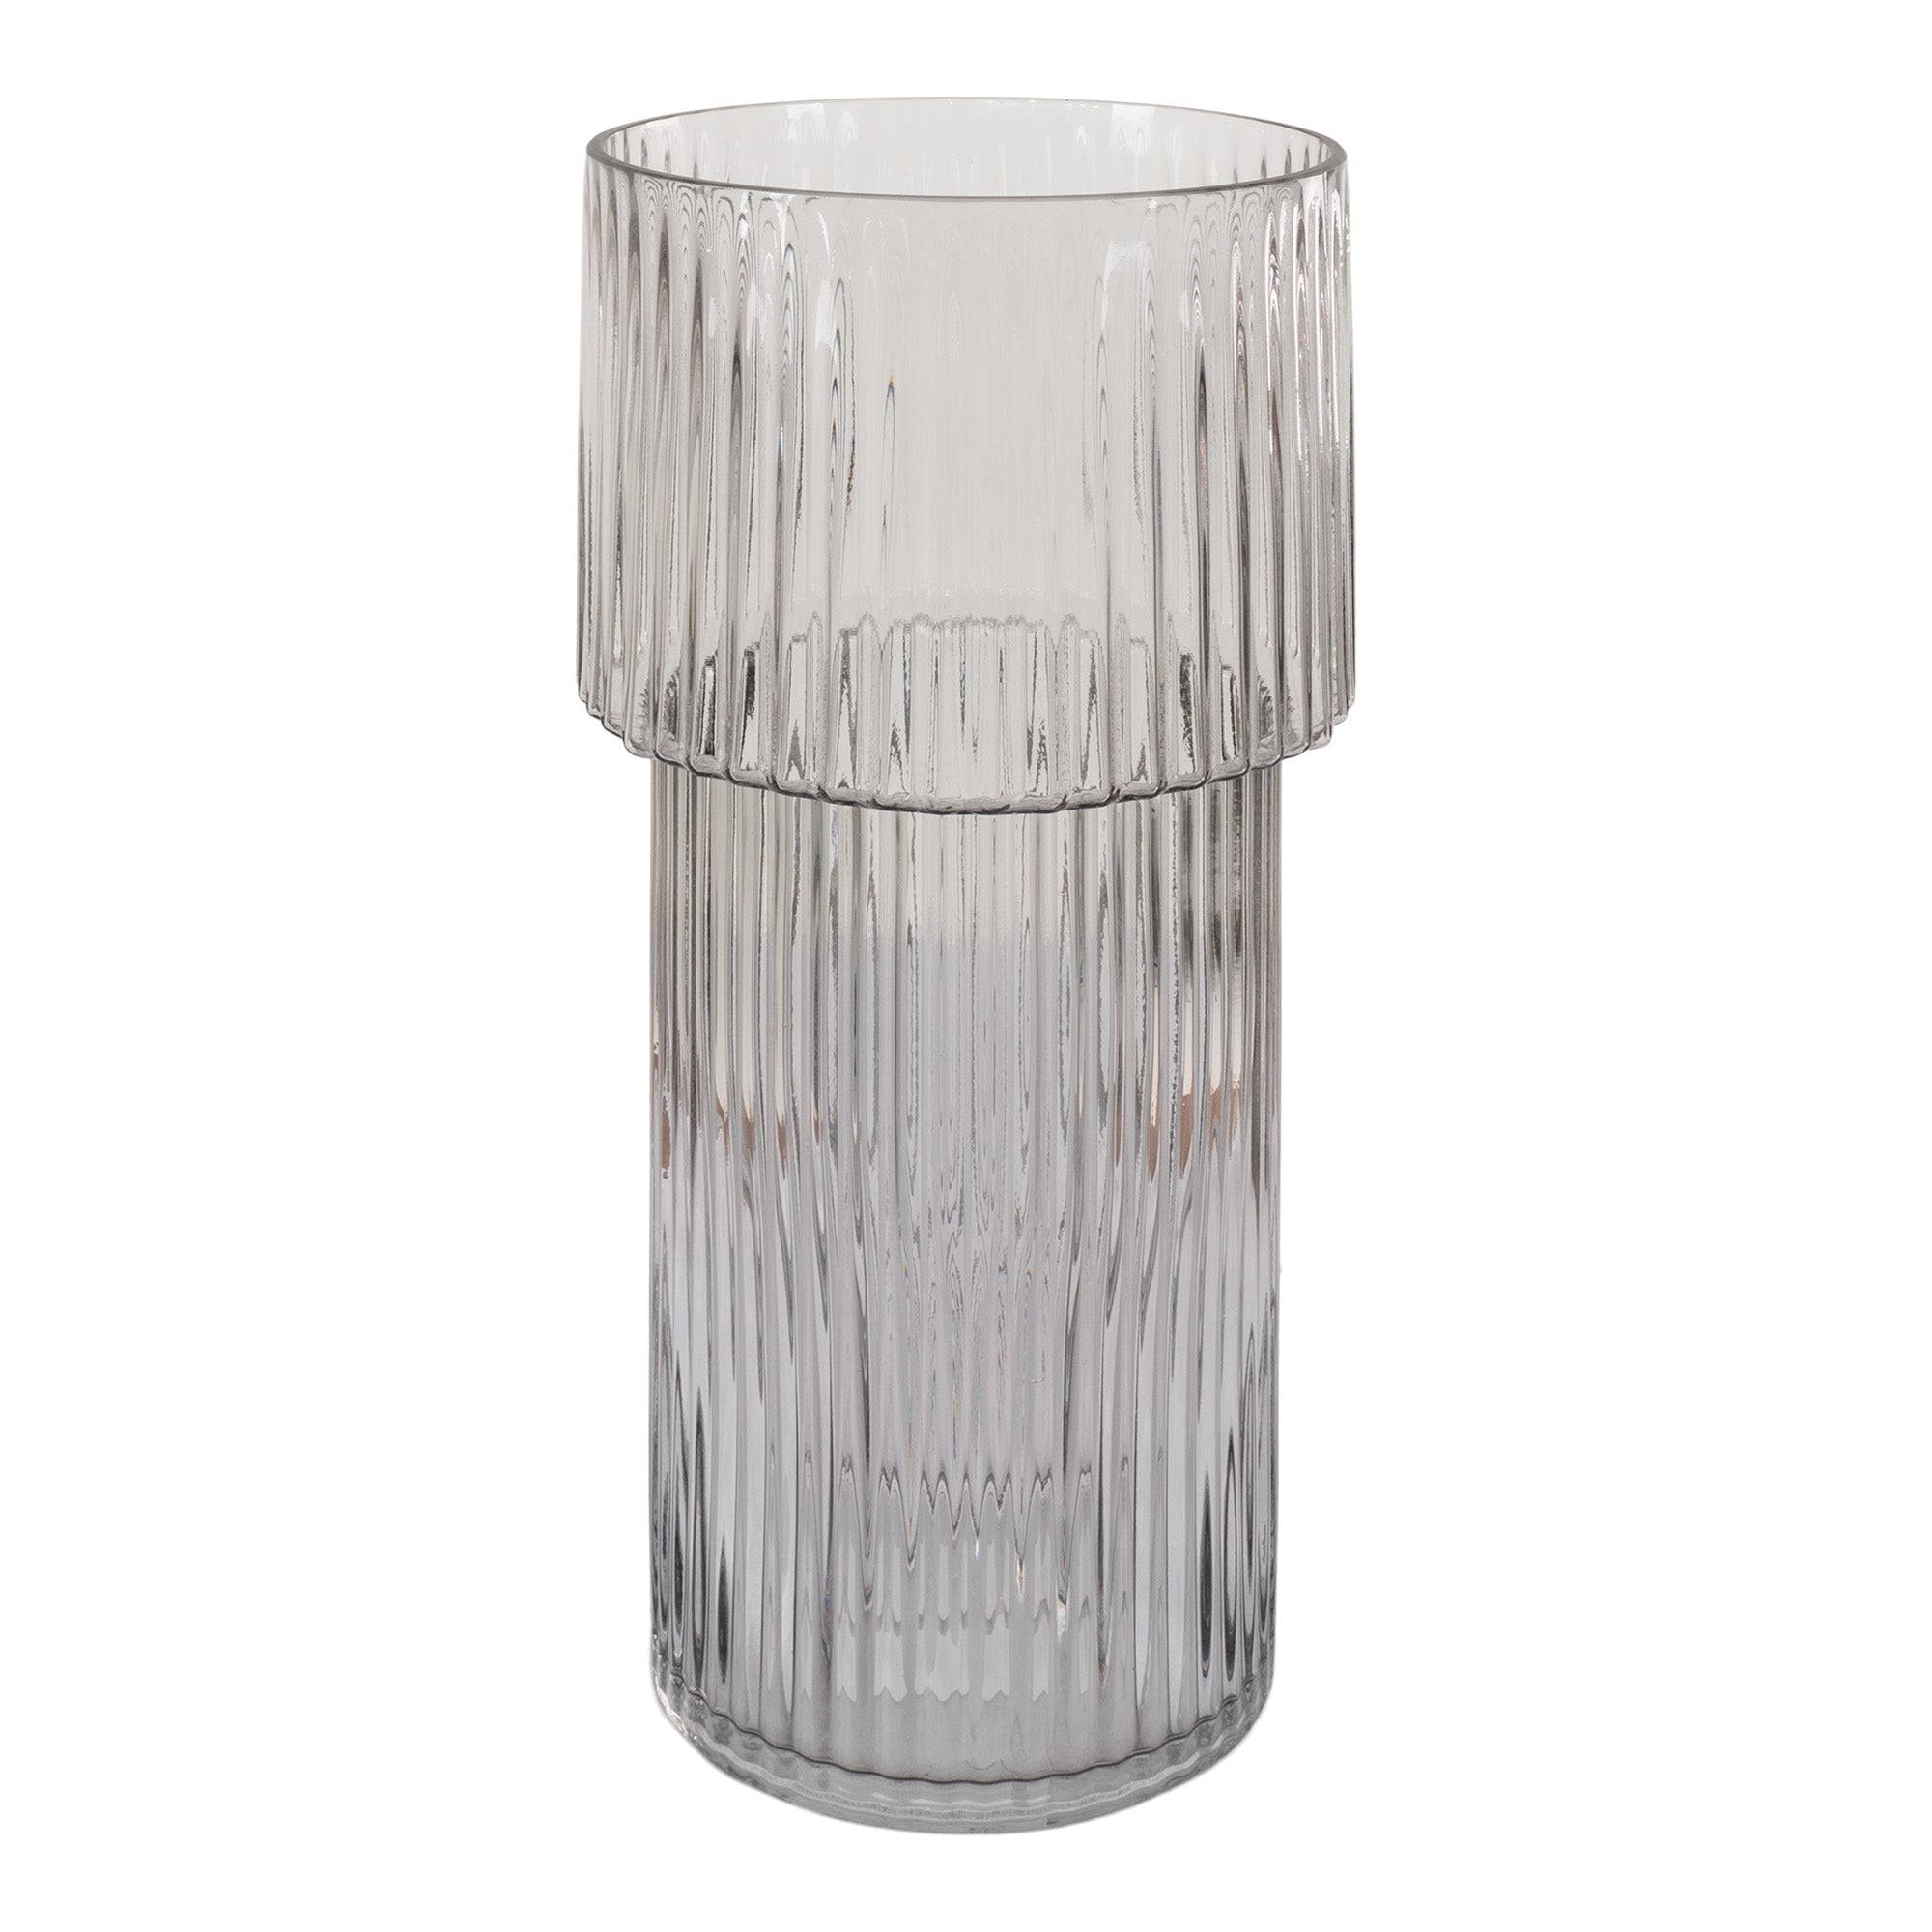 Vase - Vase I Mundblæst Glas, Klar, Rund, Ø17,5X40 Cm ⎮ 5713917022137 ⎮ 4441372 